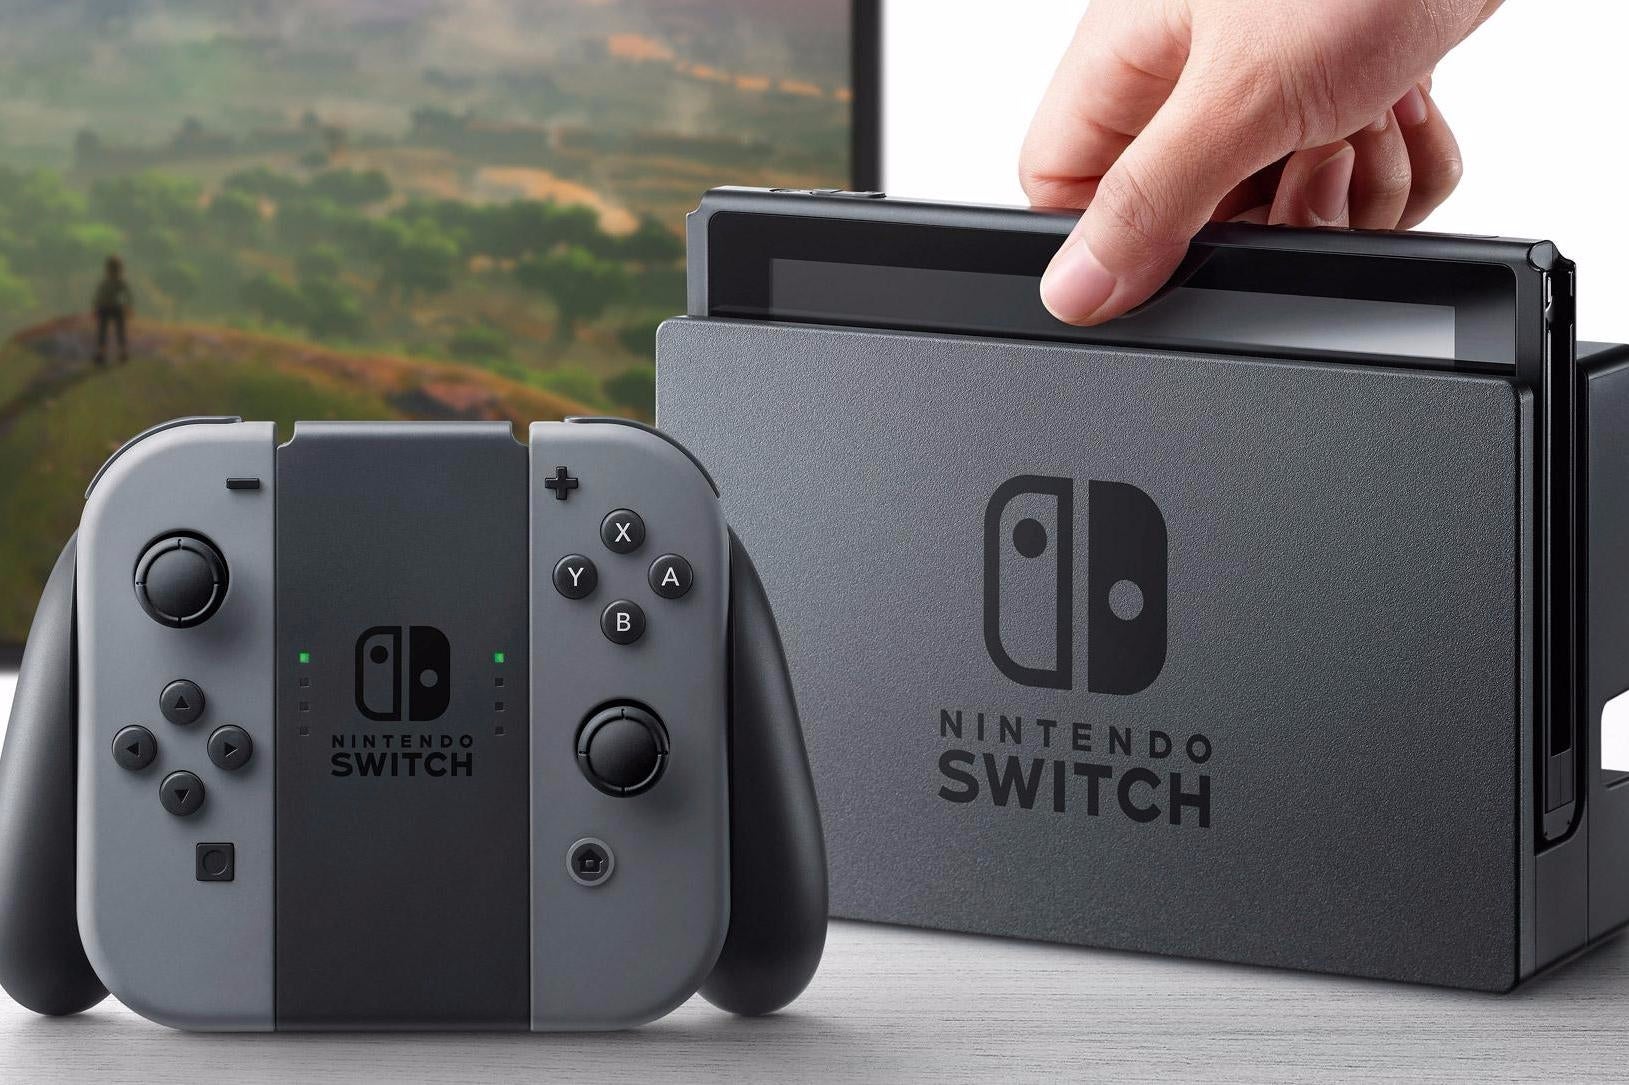 Afbeeldingen van Nintendo Switch per vliegtuig verscheept vanwege grote vraag